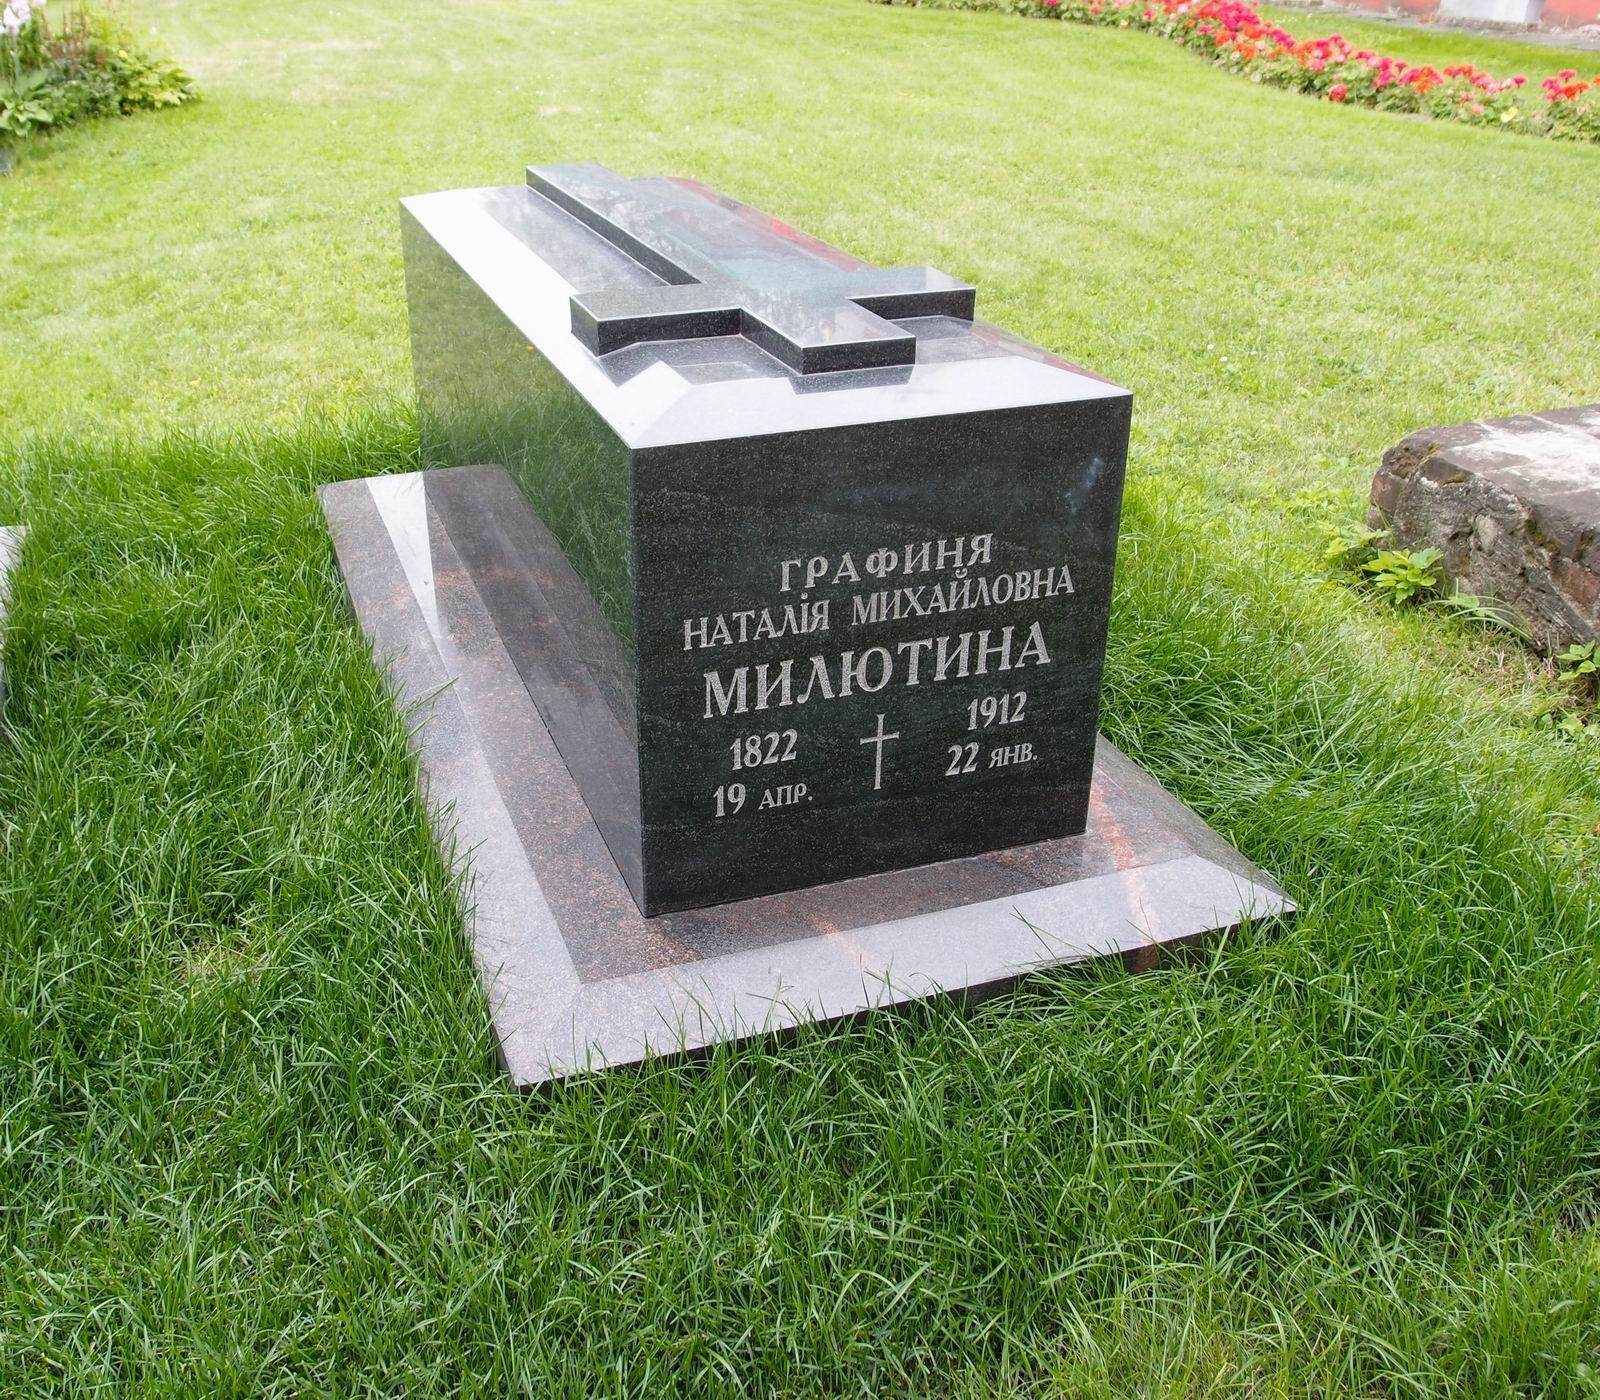 Памятник на могиле Милютиной Н.М. (1822–1912), в Новодевичьем монастыре.